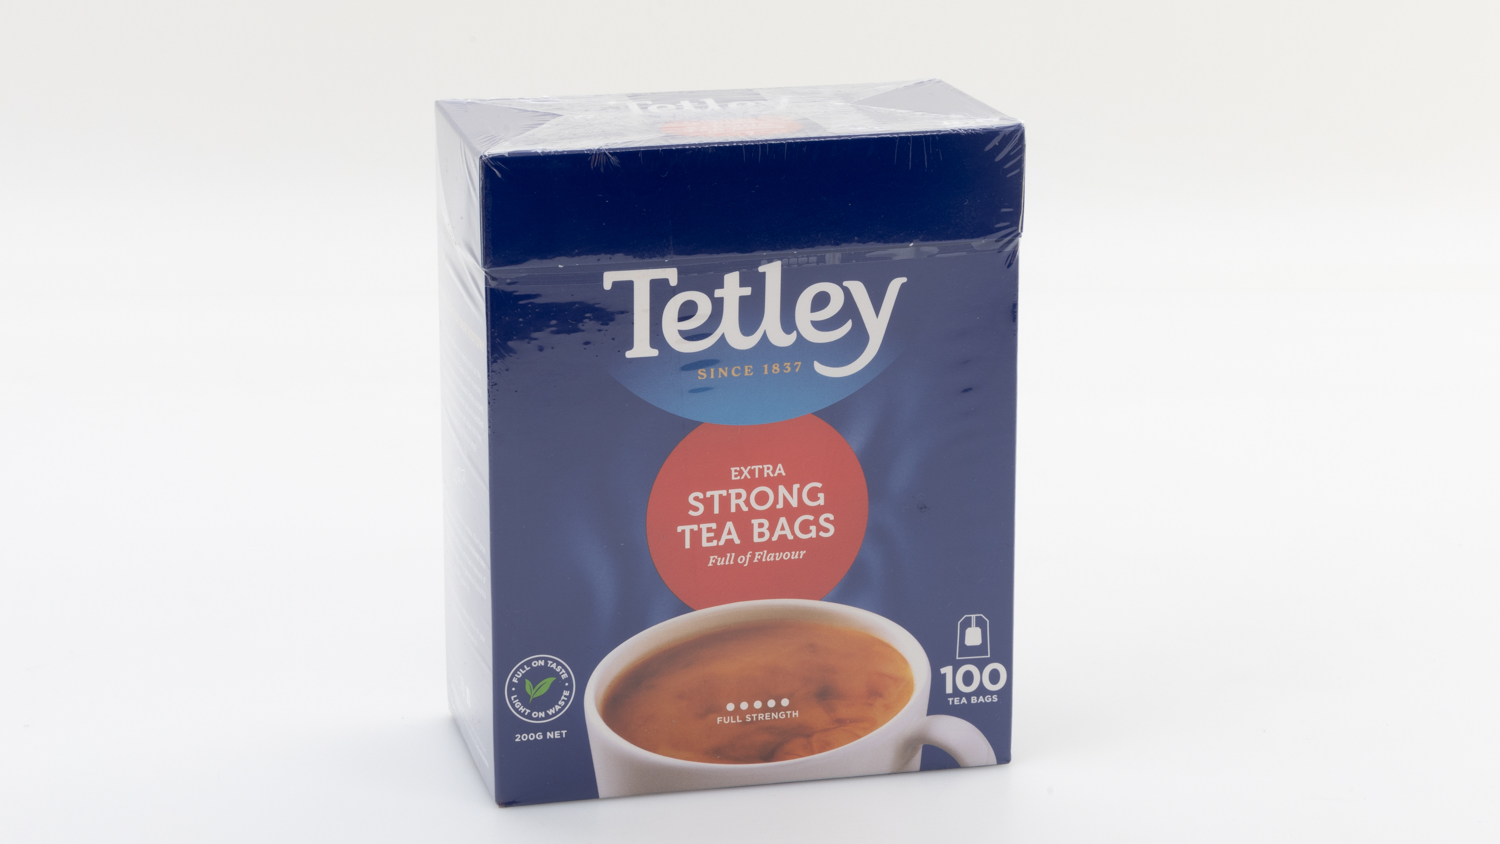 Tetley Extra Strong Tea Bags carousel image